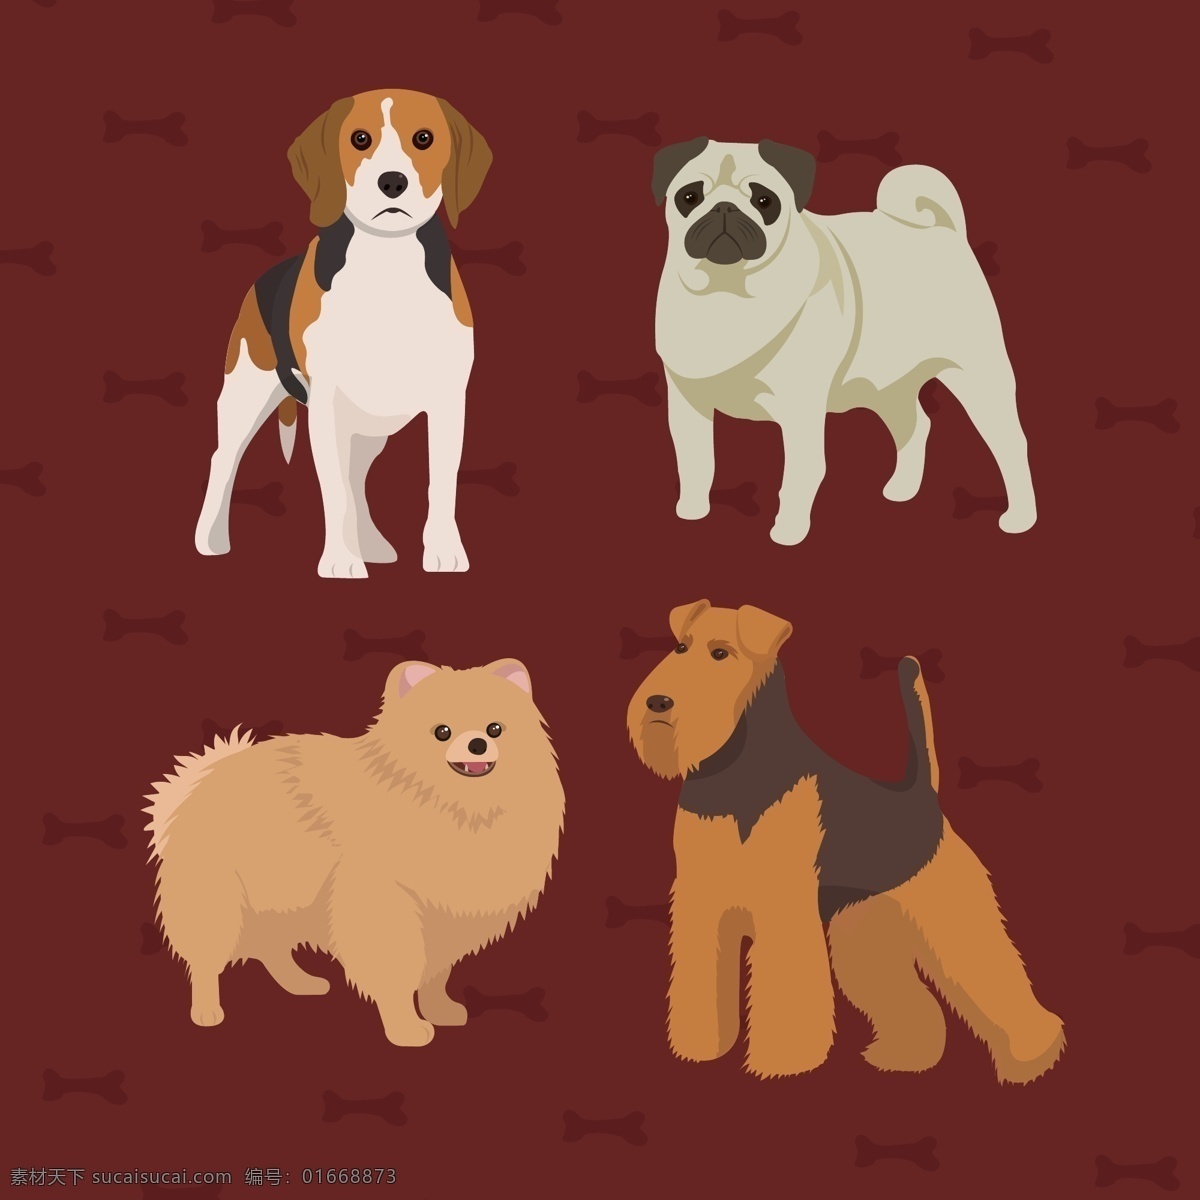 表情 柴犬 动物 狗 卡通 卡通狗 可爱 可爱宠物 犬 手绘 语言 写实